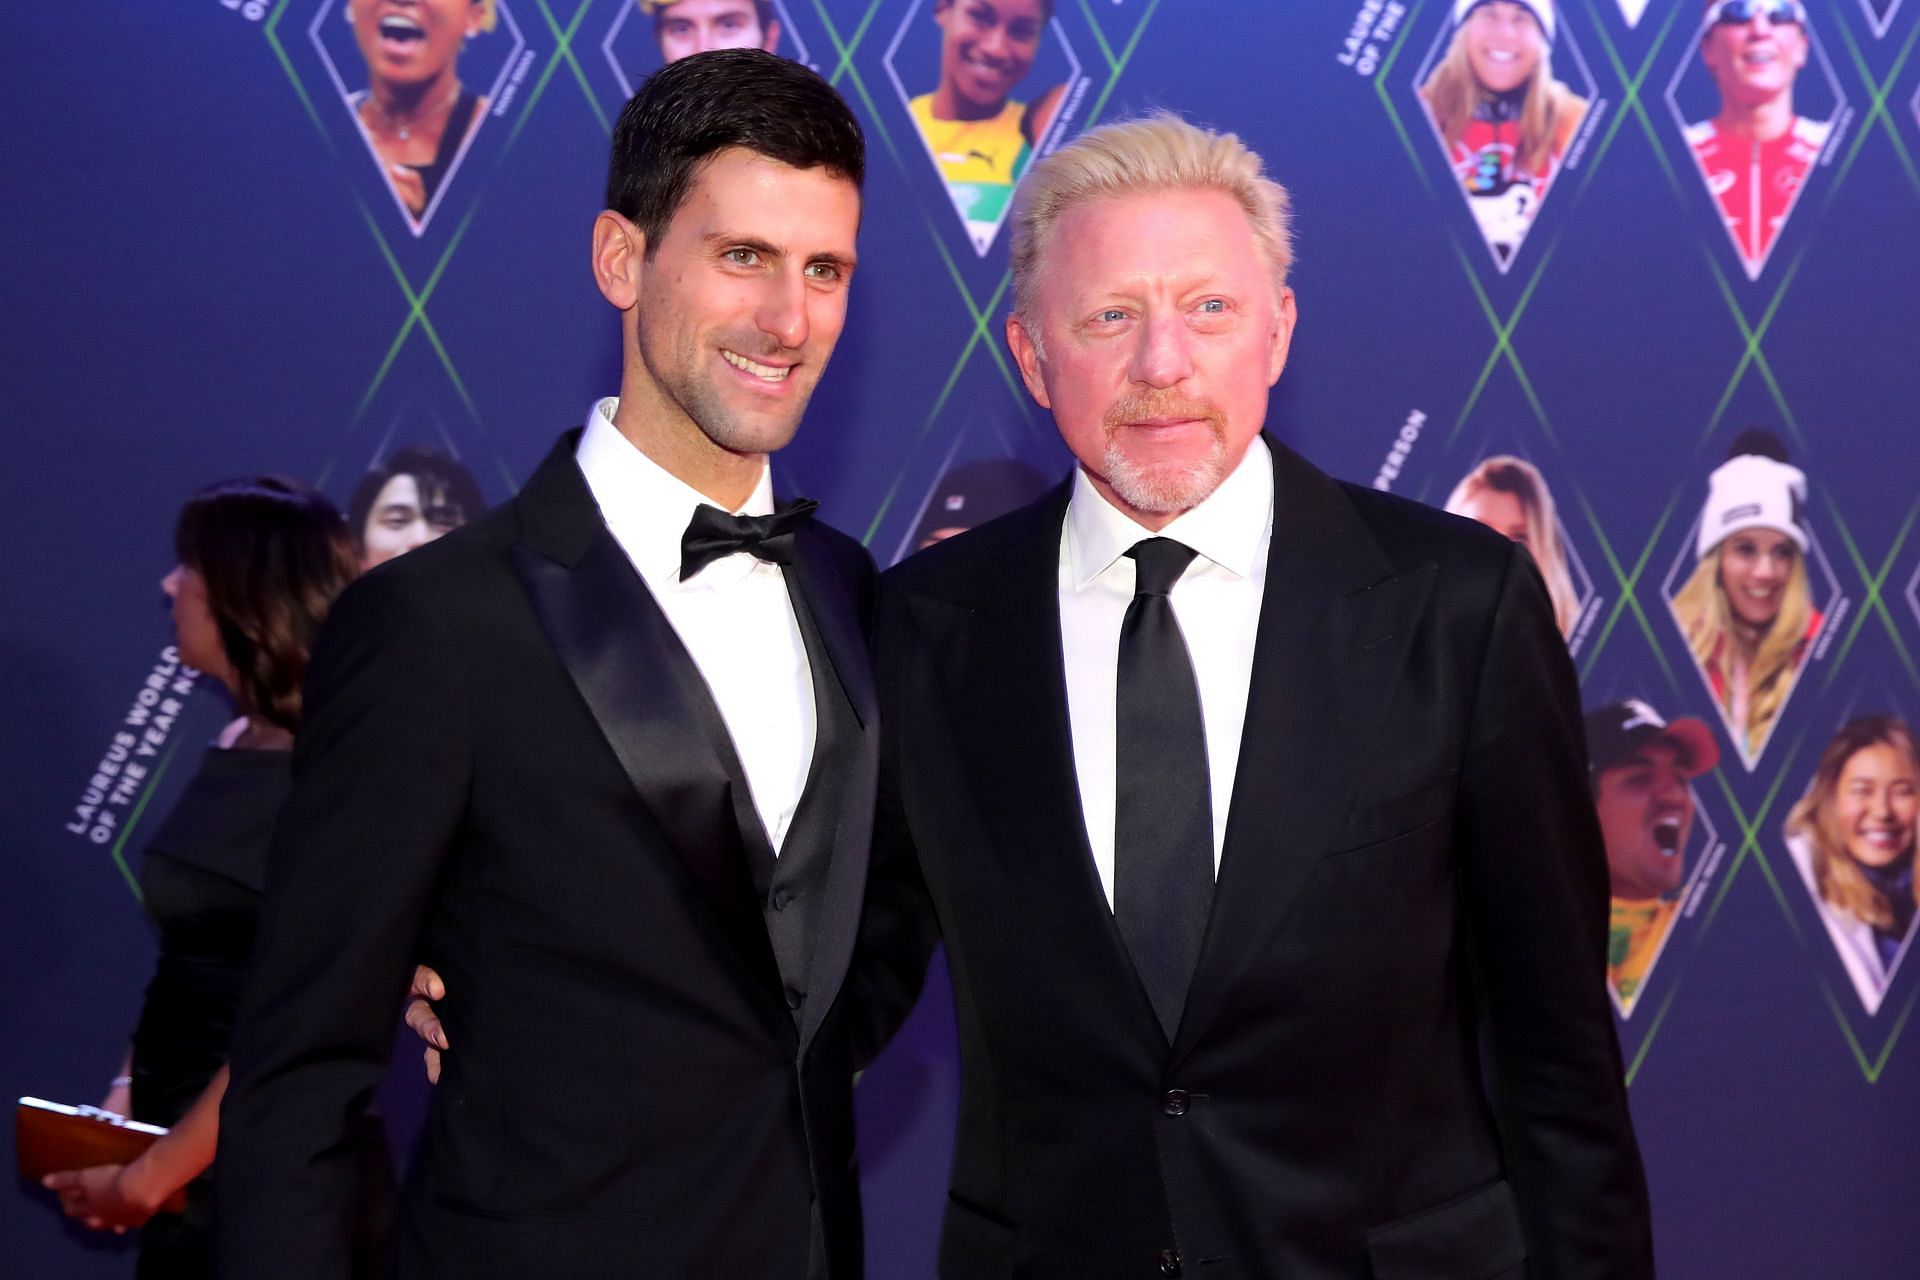 Novak Djokovic and Boris Becker at an event